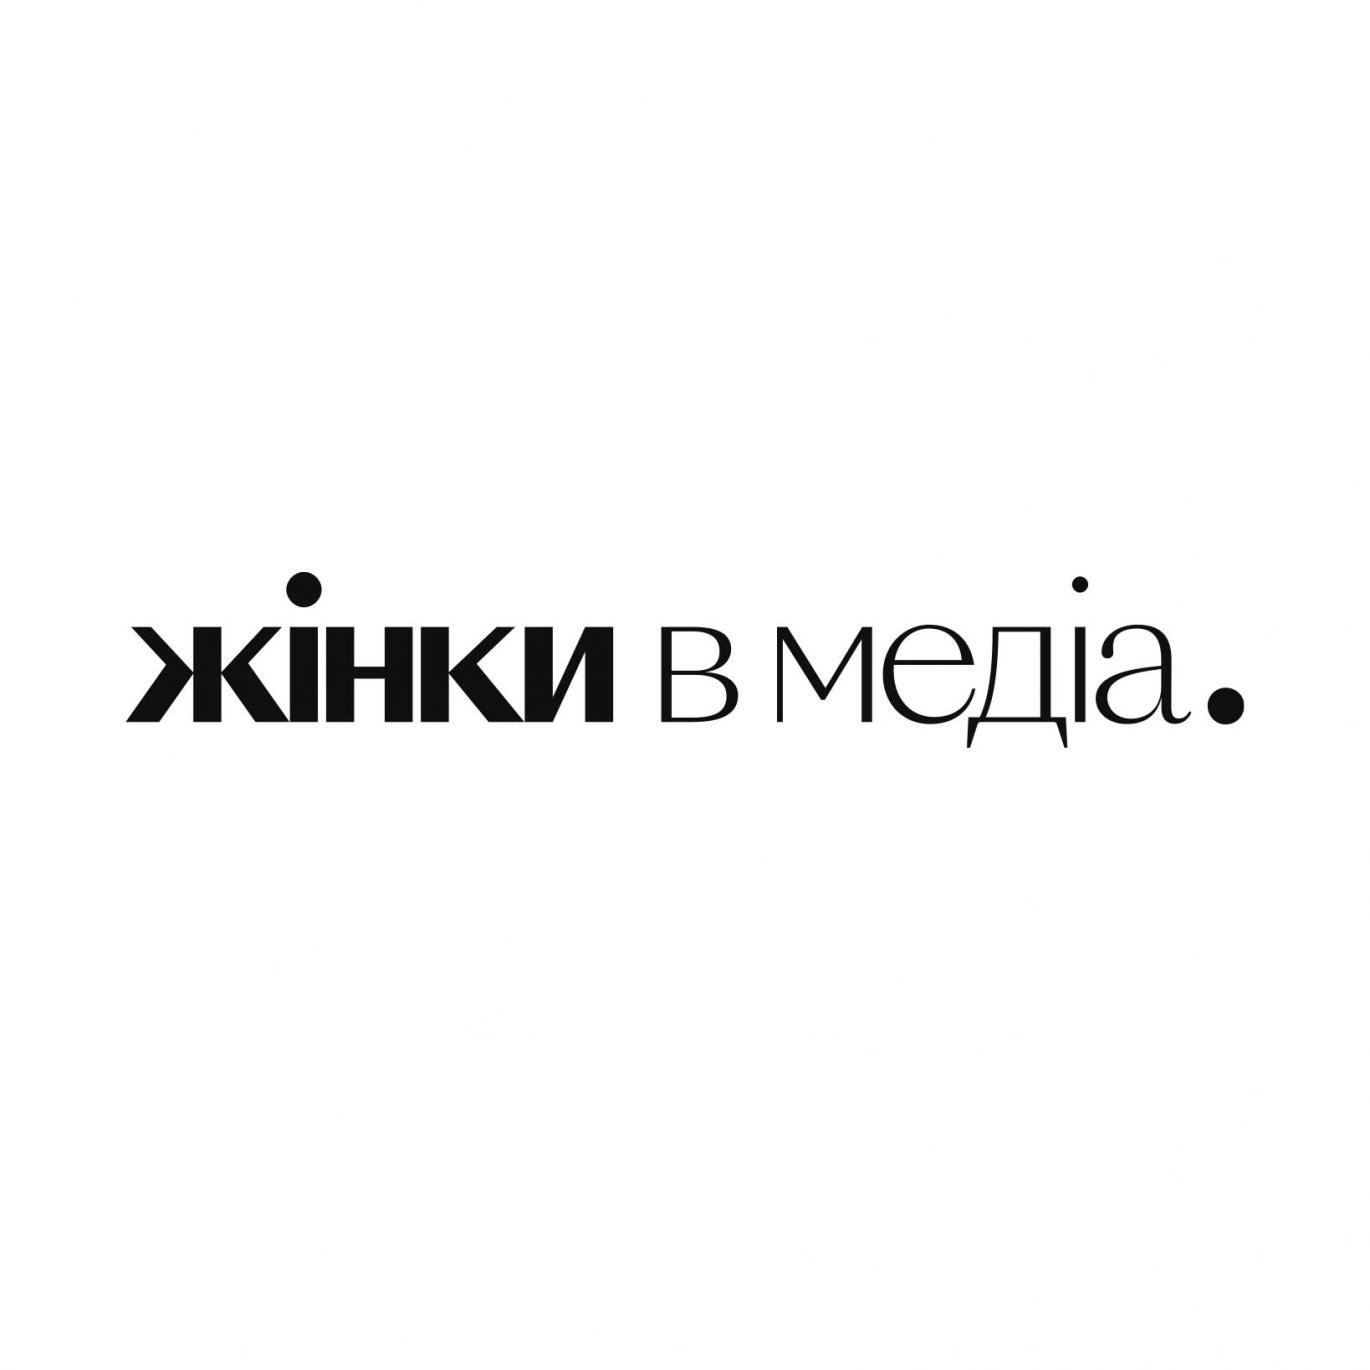 До 20 лютого — опитування медійників про складнощі висвітлення теми відновлення України